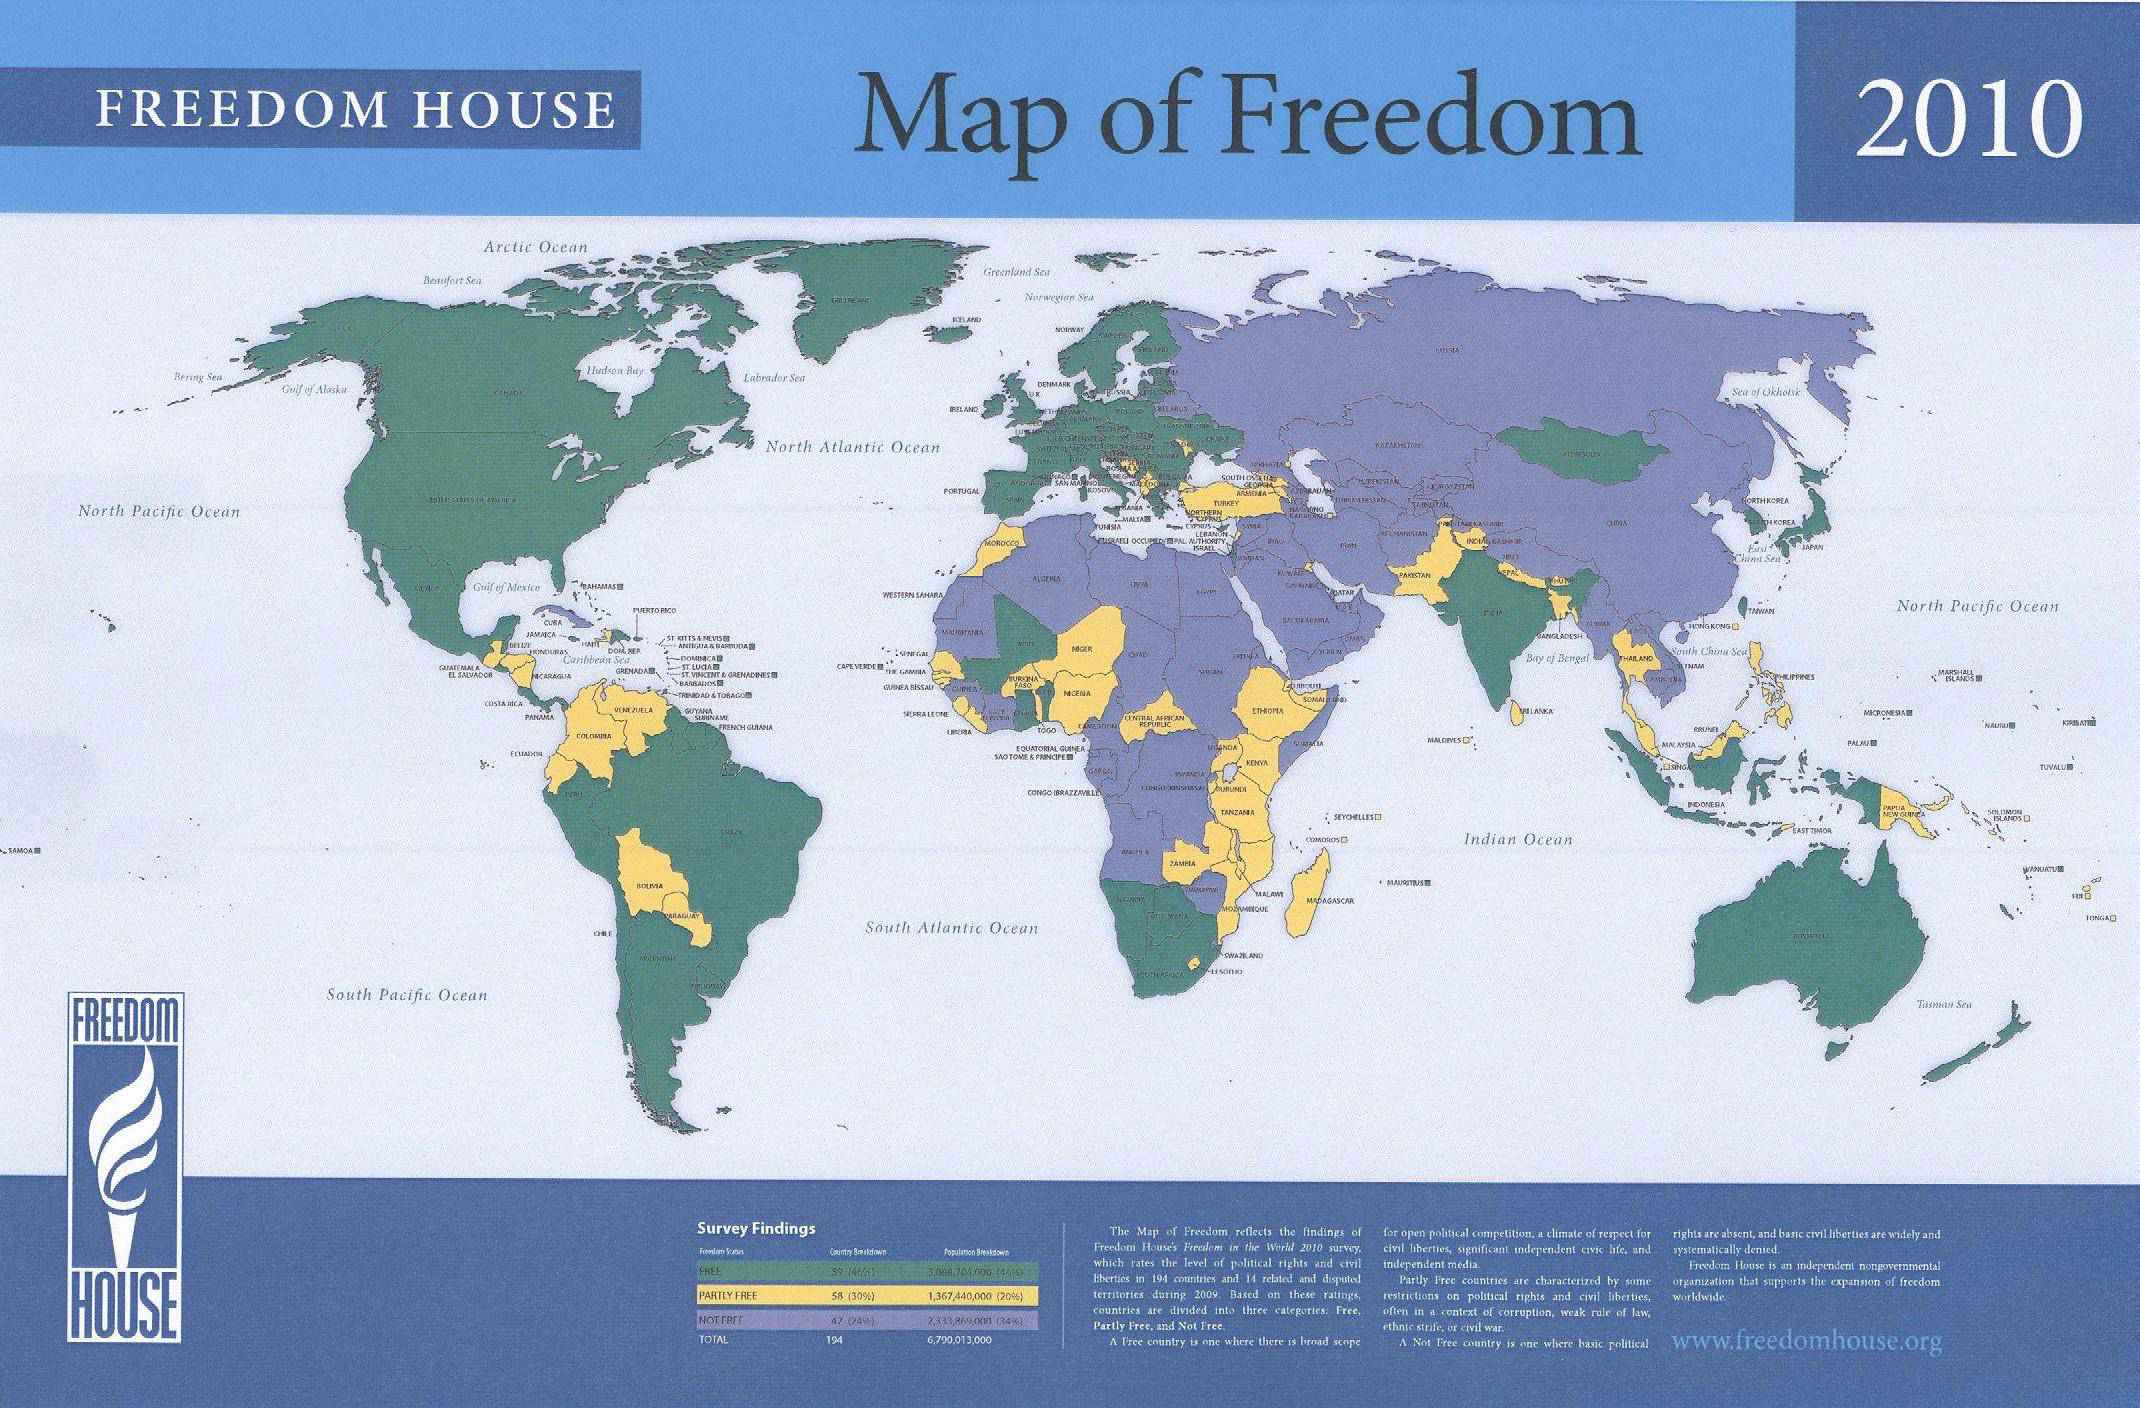 FH: Liria pësoi rënie në shkallë globale, Kosova, pjesërisht i lirë